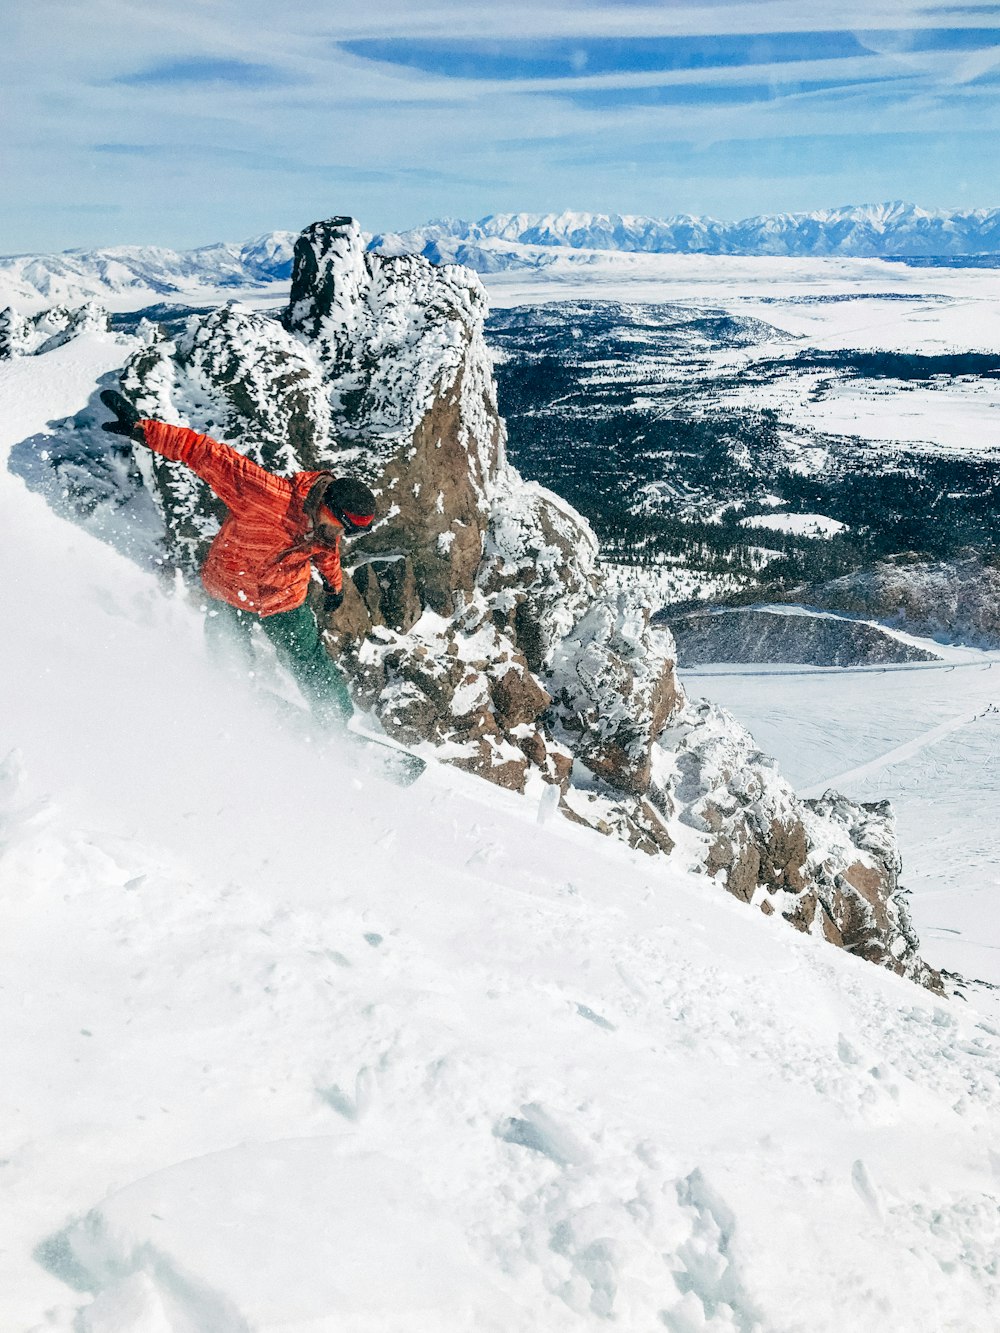 Mann beim Snowboarden auf einem mit Eis bedeckten Berg